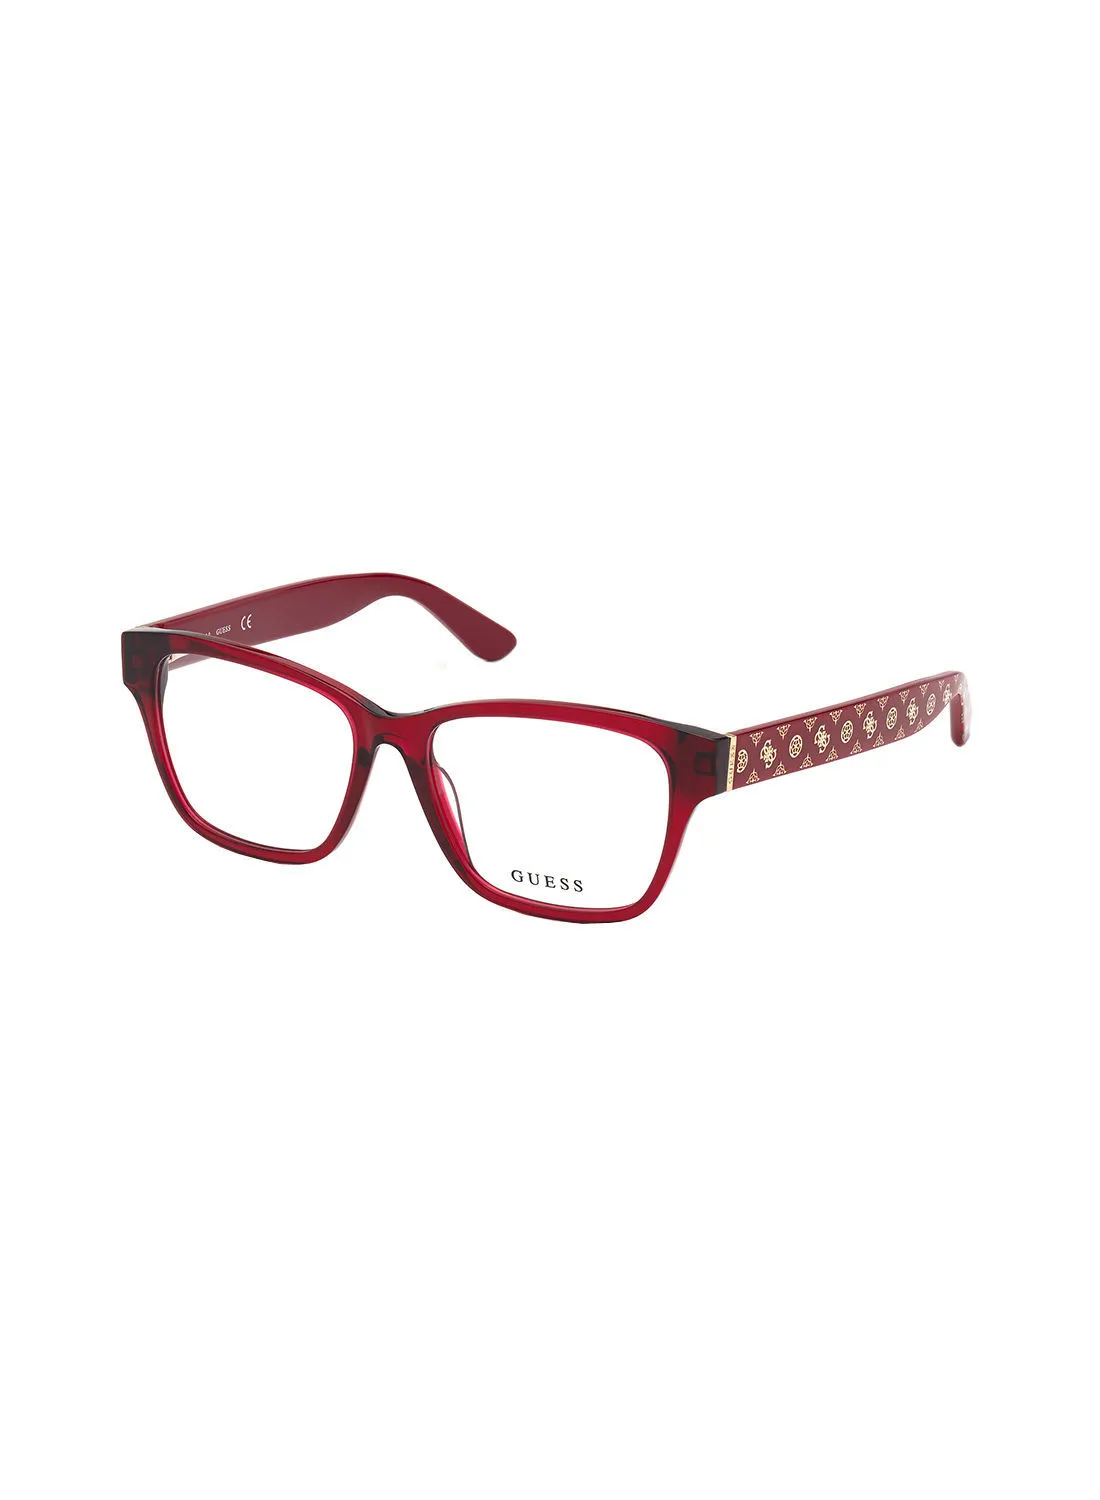 GUESS Square Eyewear Optical Frame GU282306655